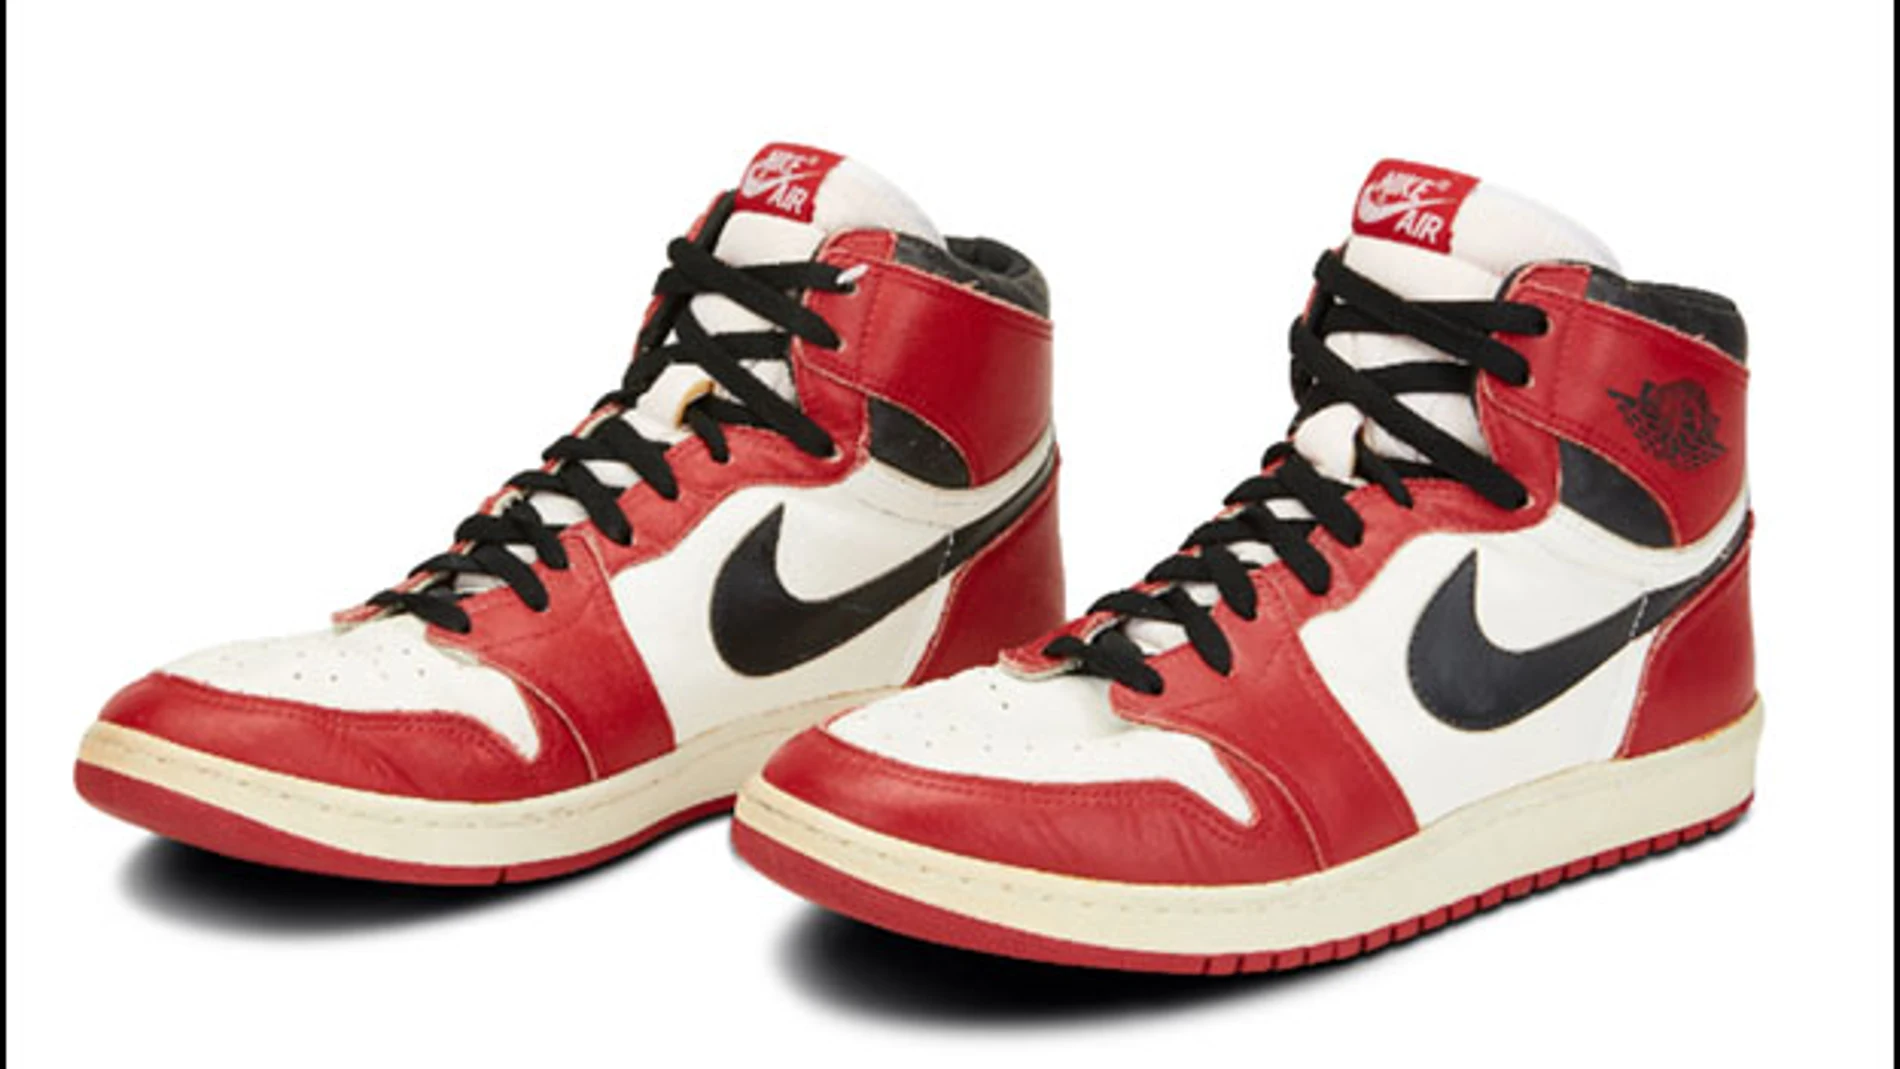 Modelo Air Jordan 1 de Nike subastado por Sotheby's a través de internet.